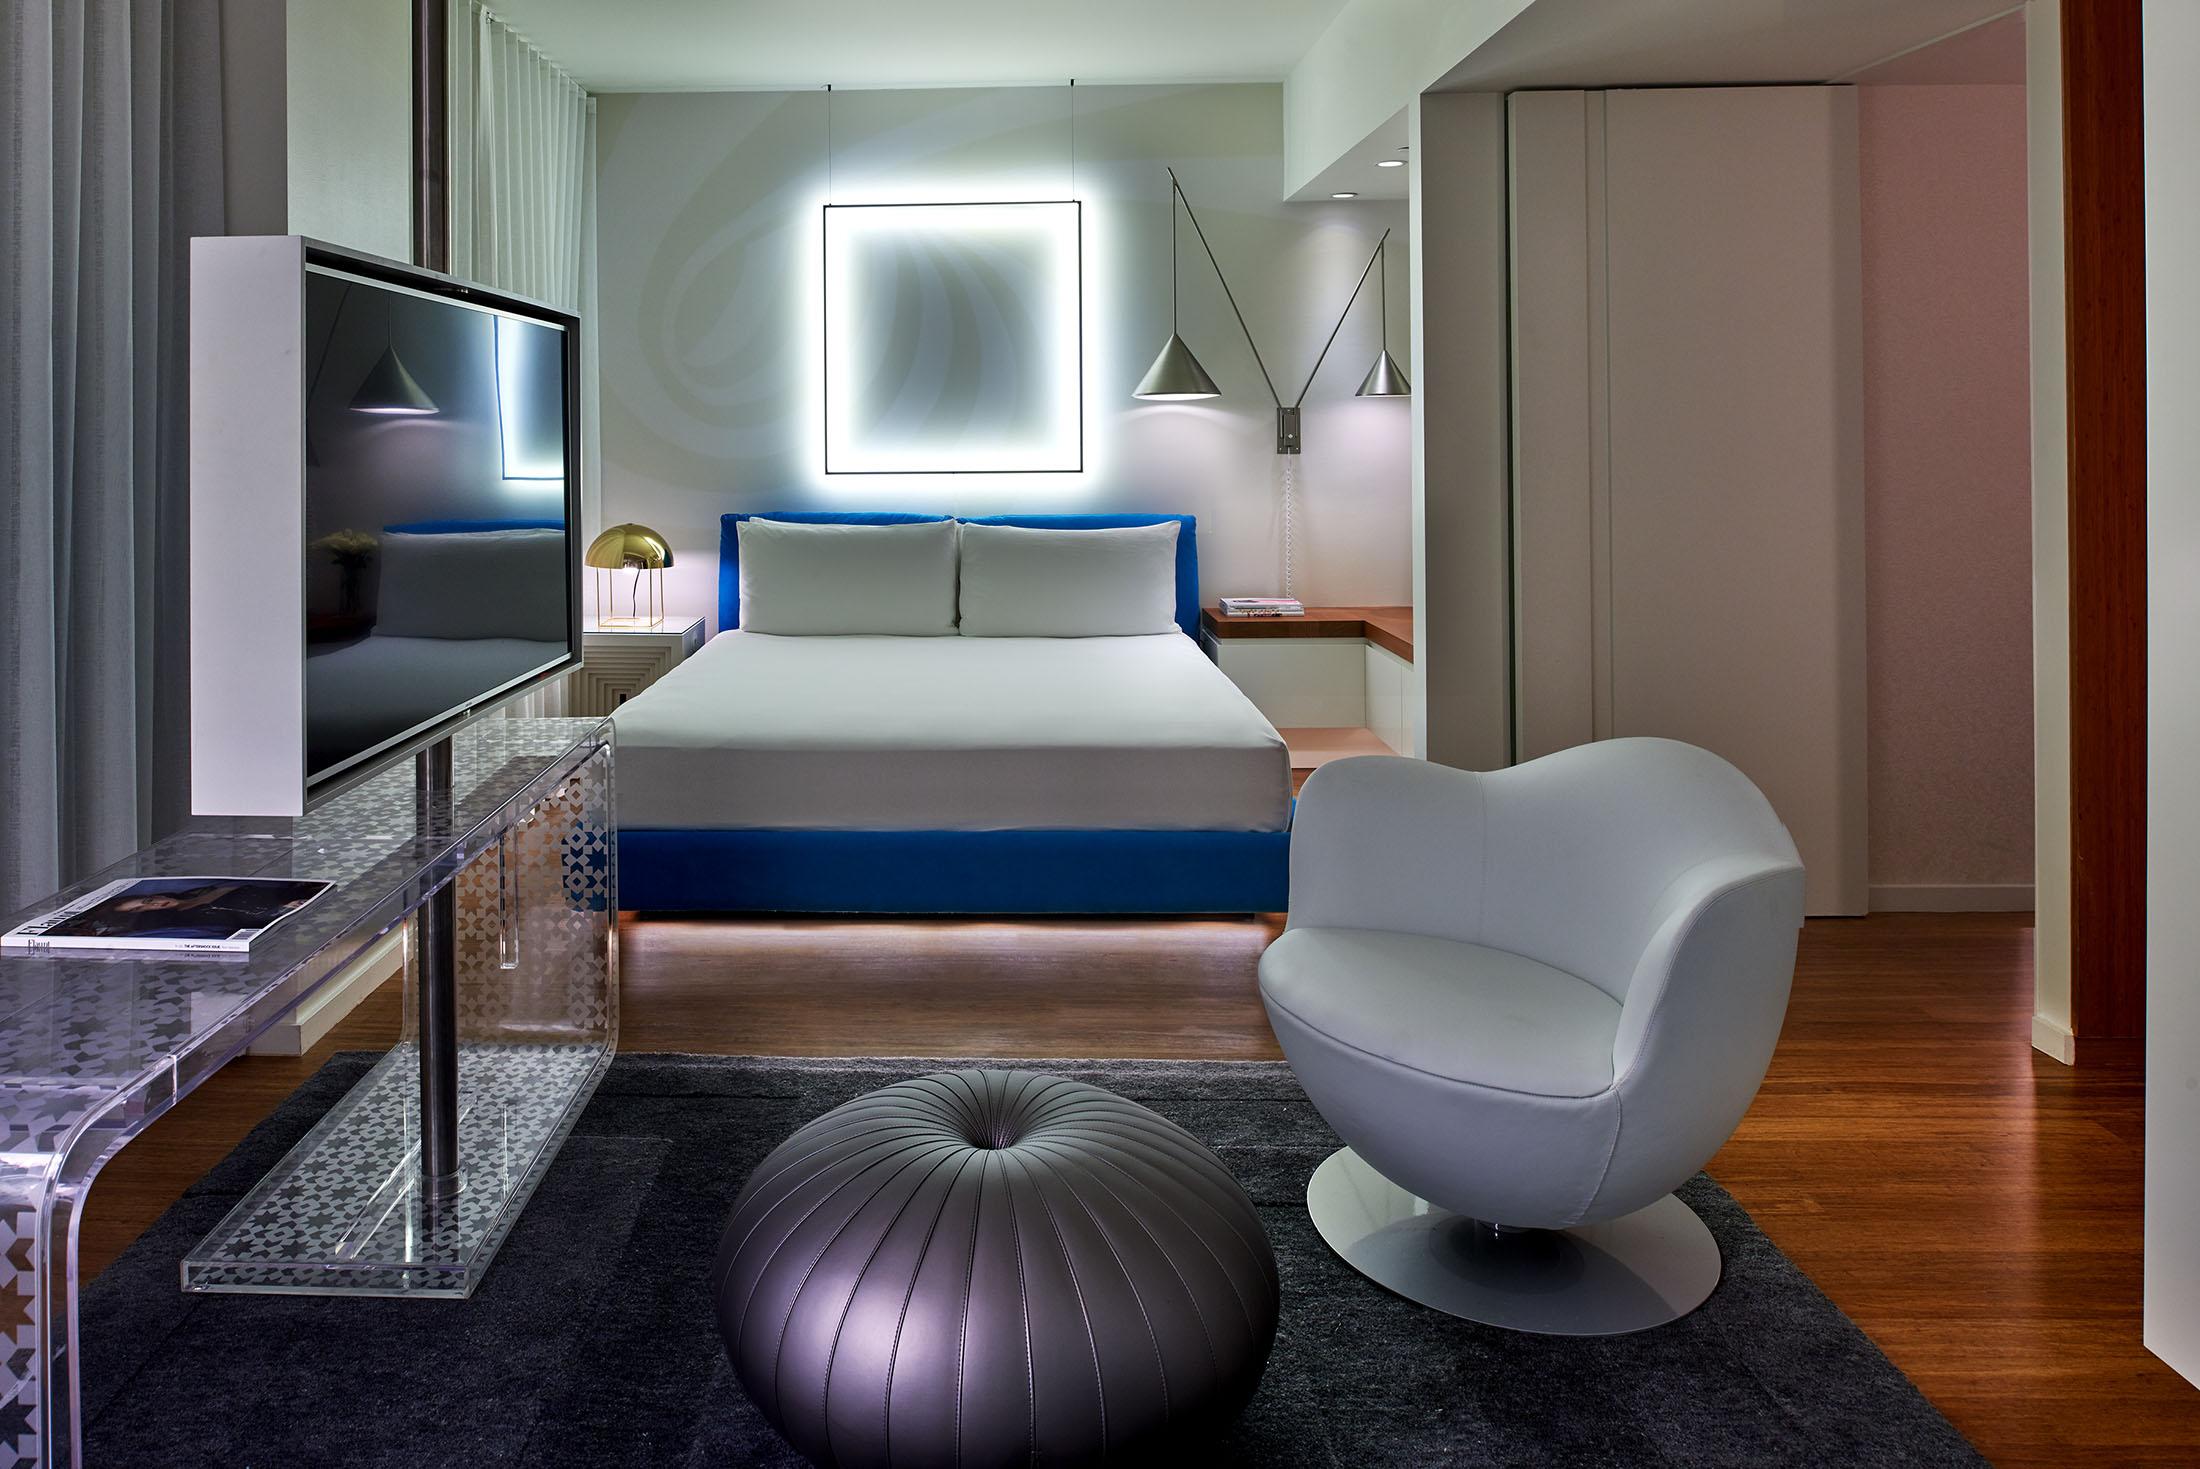 غرفة فندق بإضاءة مربعة خلف السرير وكرسي في المقدمة.